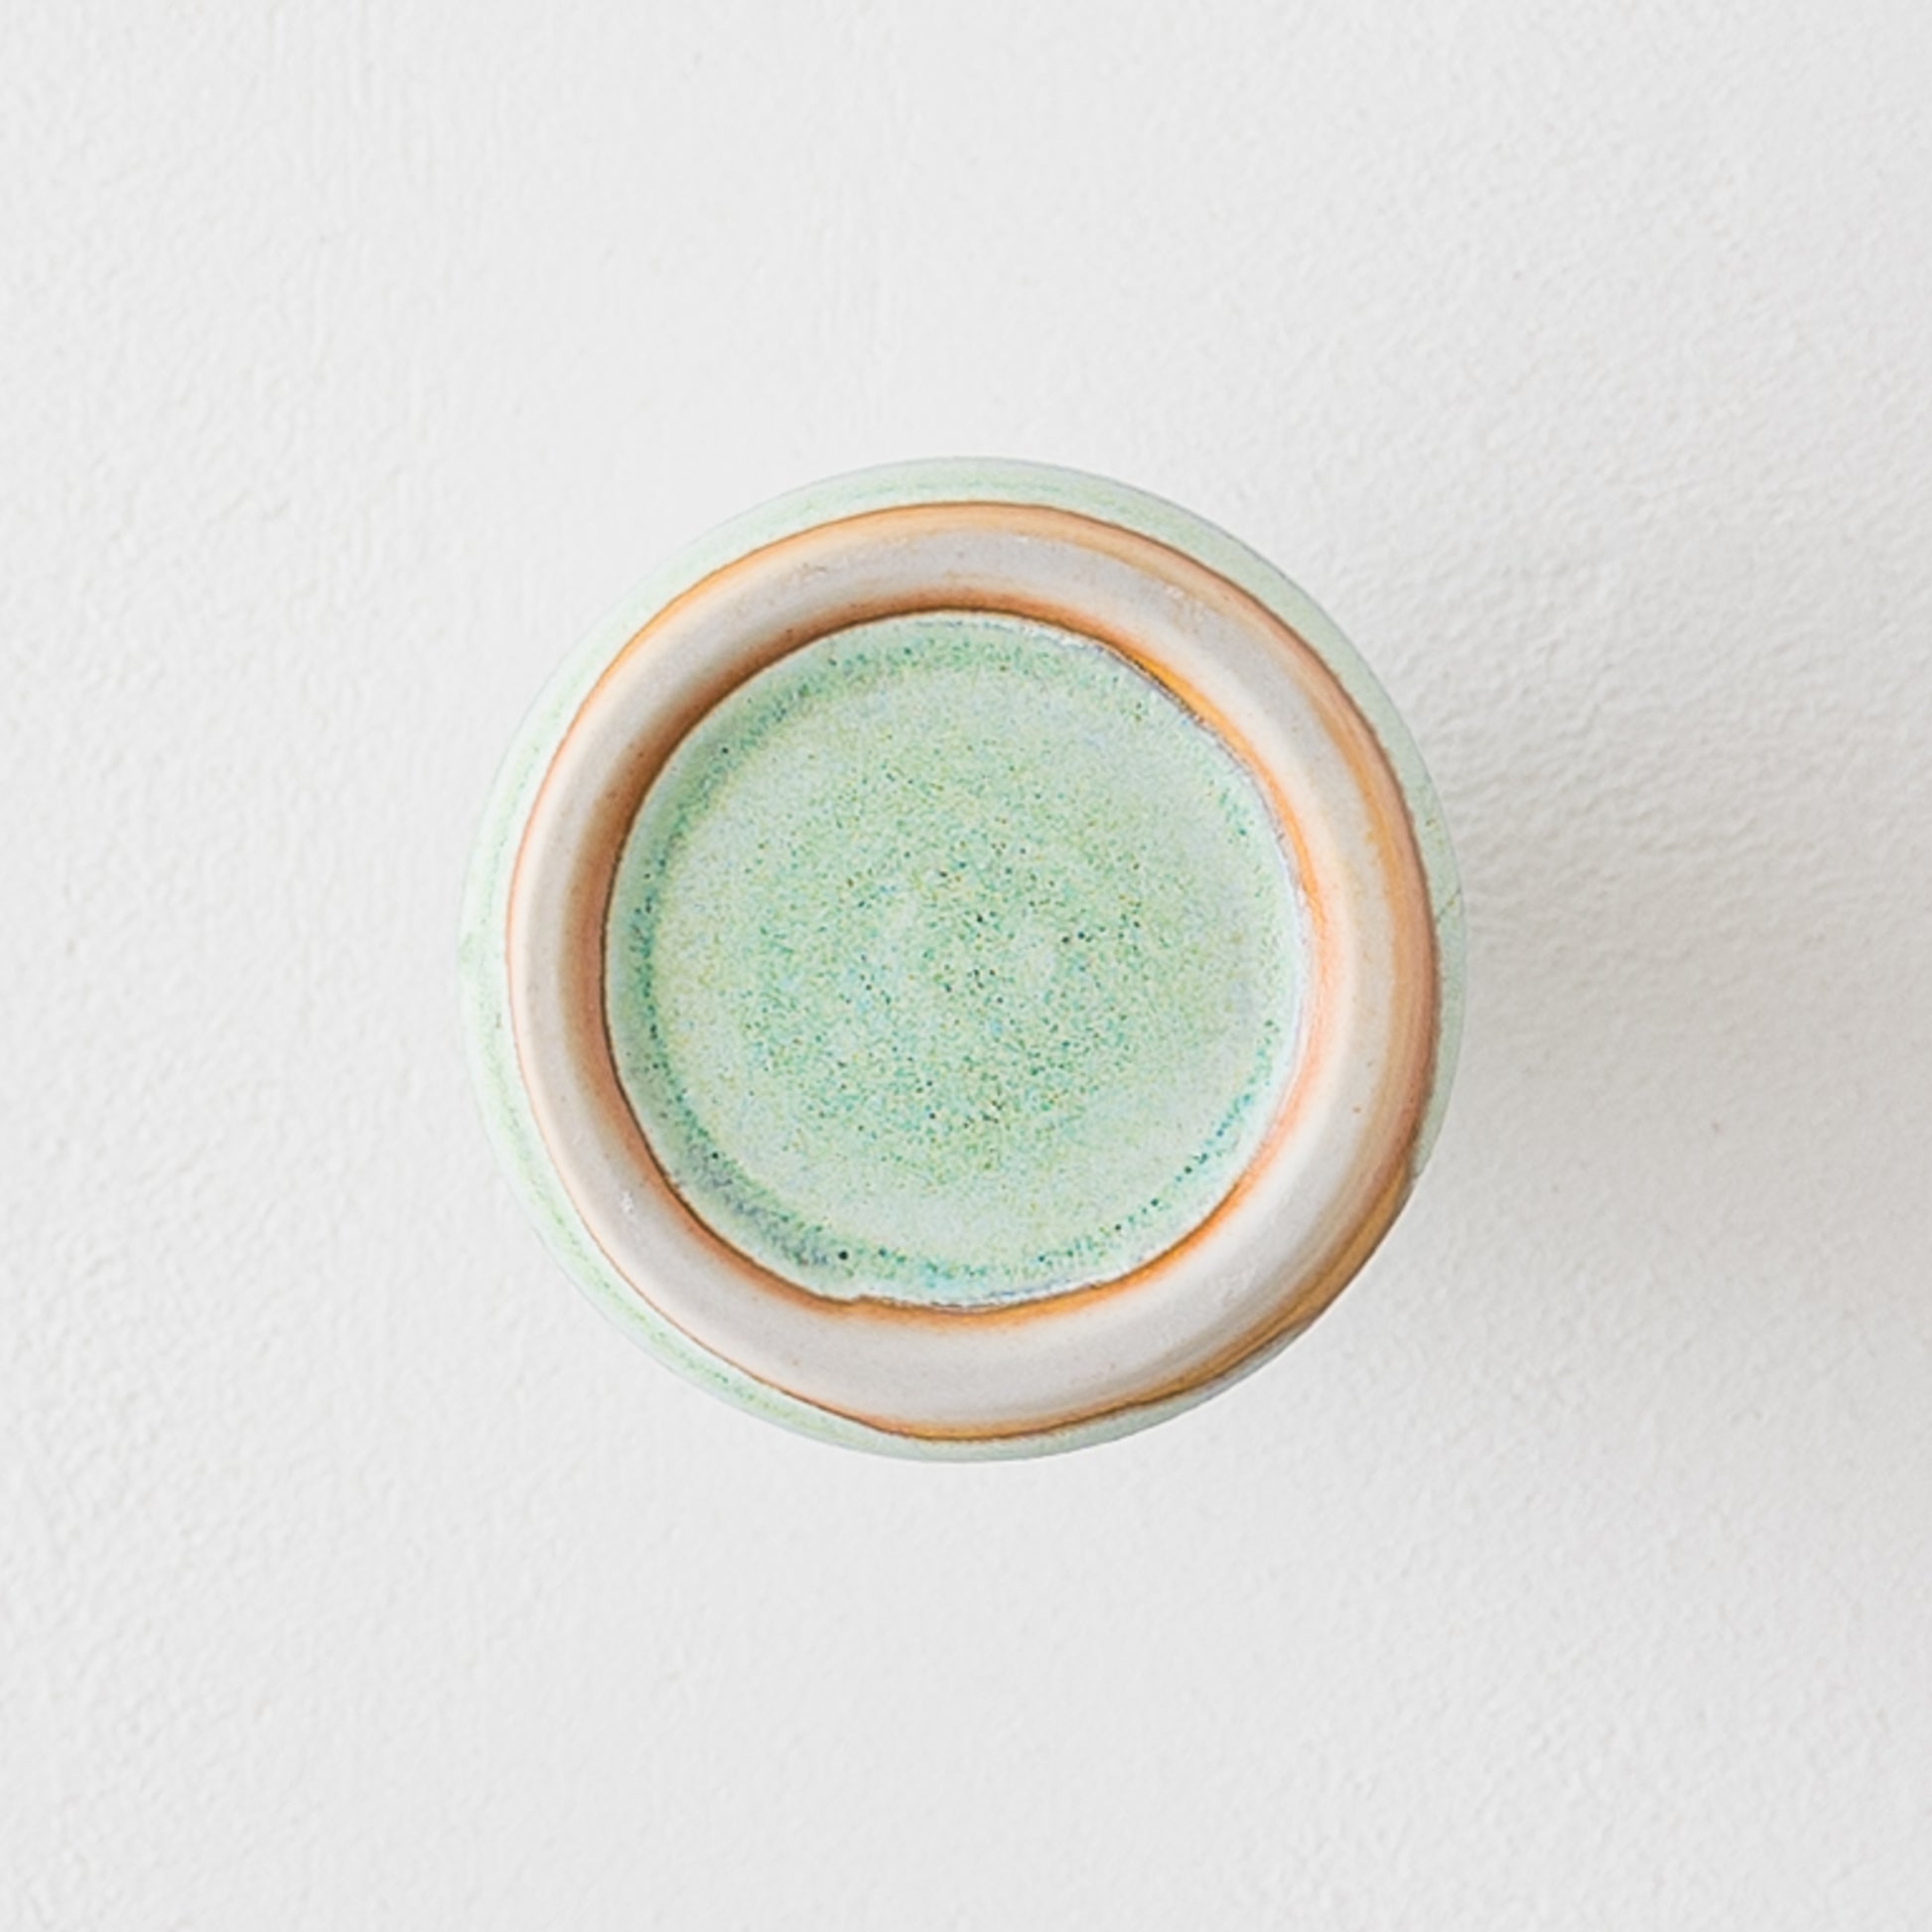 鮮やかなミントグリーンがお部屋を素敵に彩る田中志保さんの花器